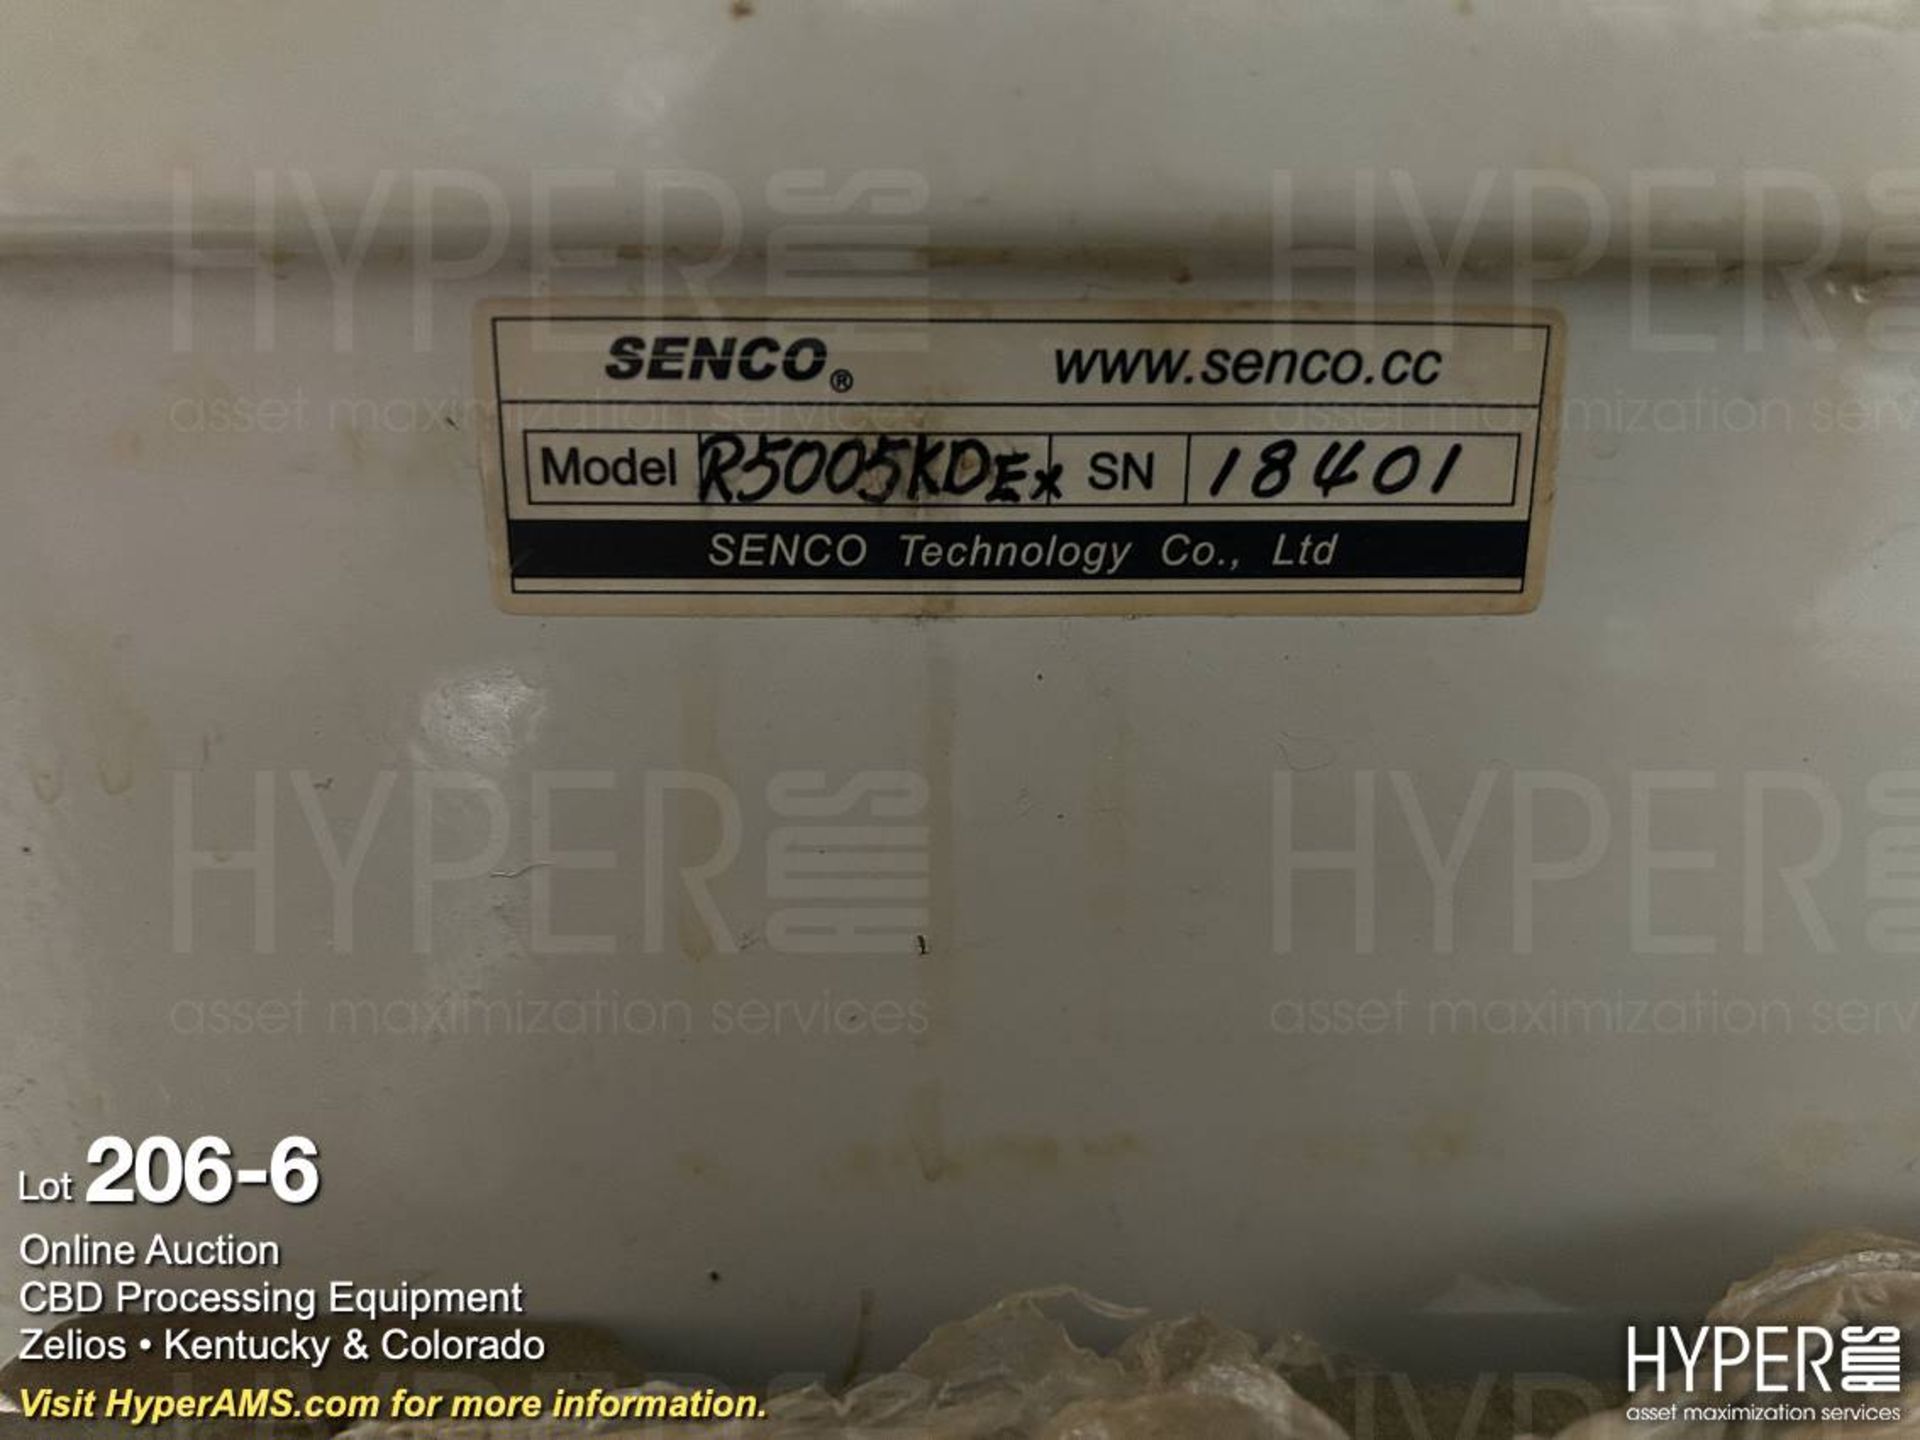 Senco Model R5005KD Rotary Evaporator, S/n 18401; - Image 6 of 9